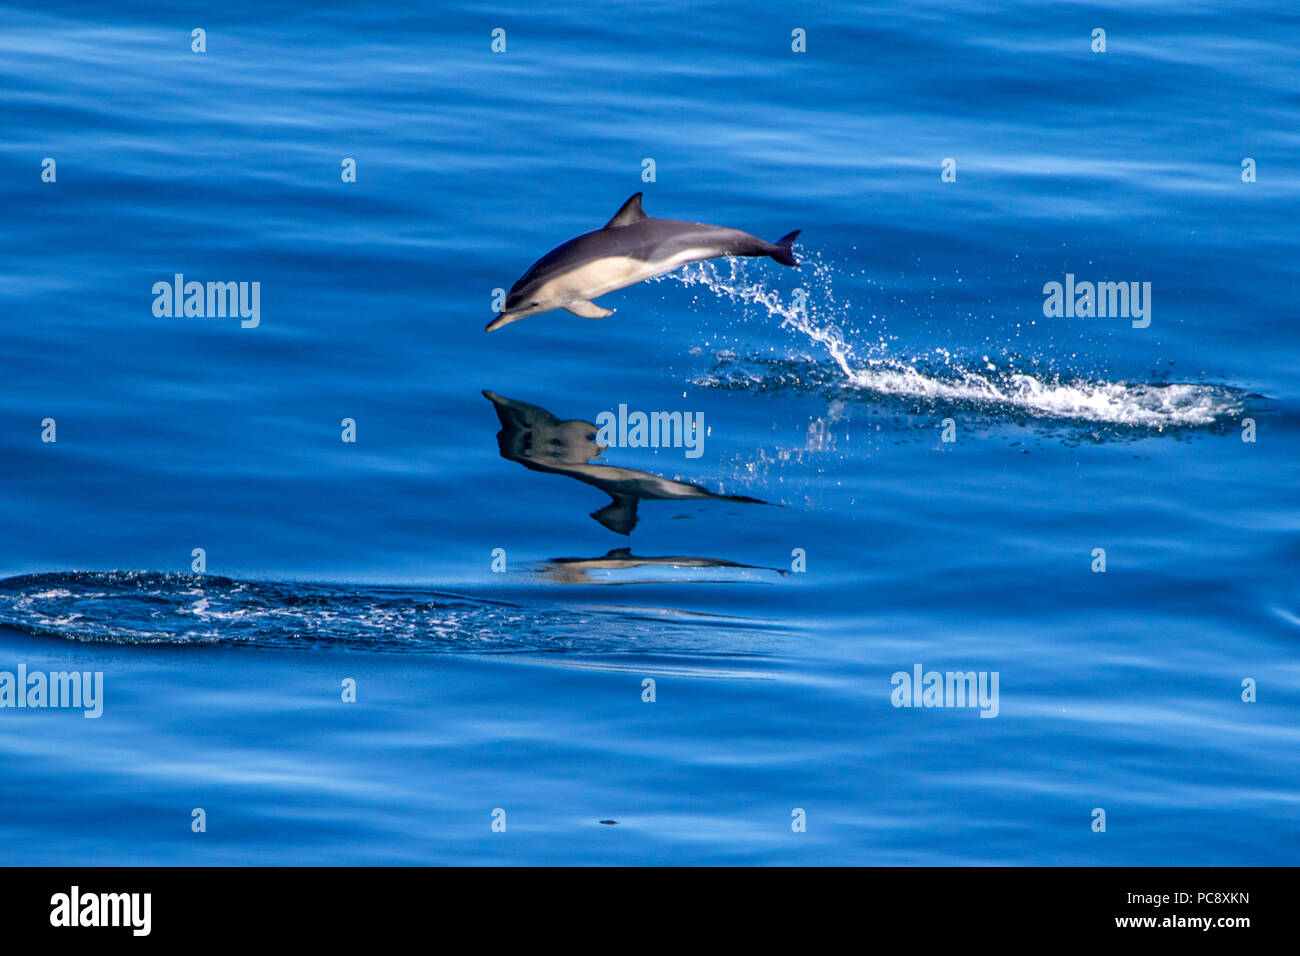 Cortocircuito picuda delfín común Delphinus delphis saltando fuera de la calma azul mar Mediterráneo Foto de stock